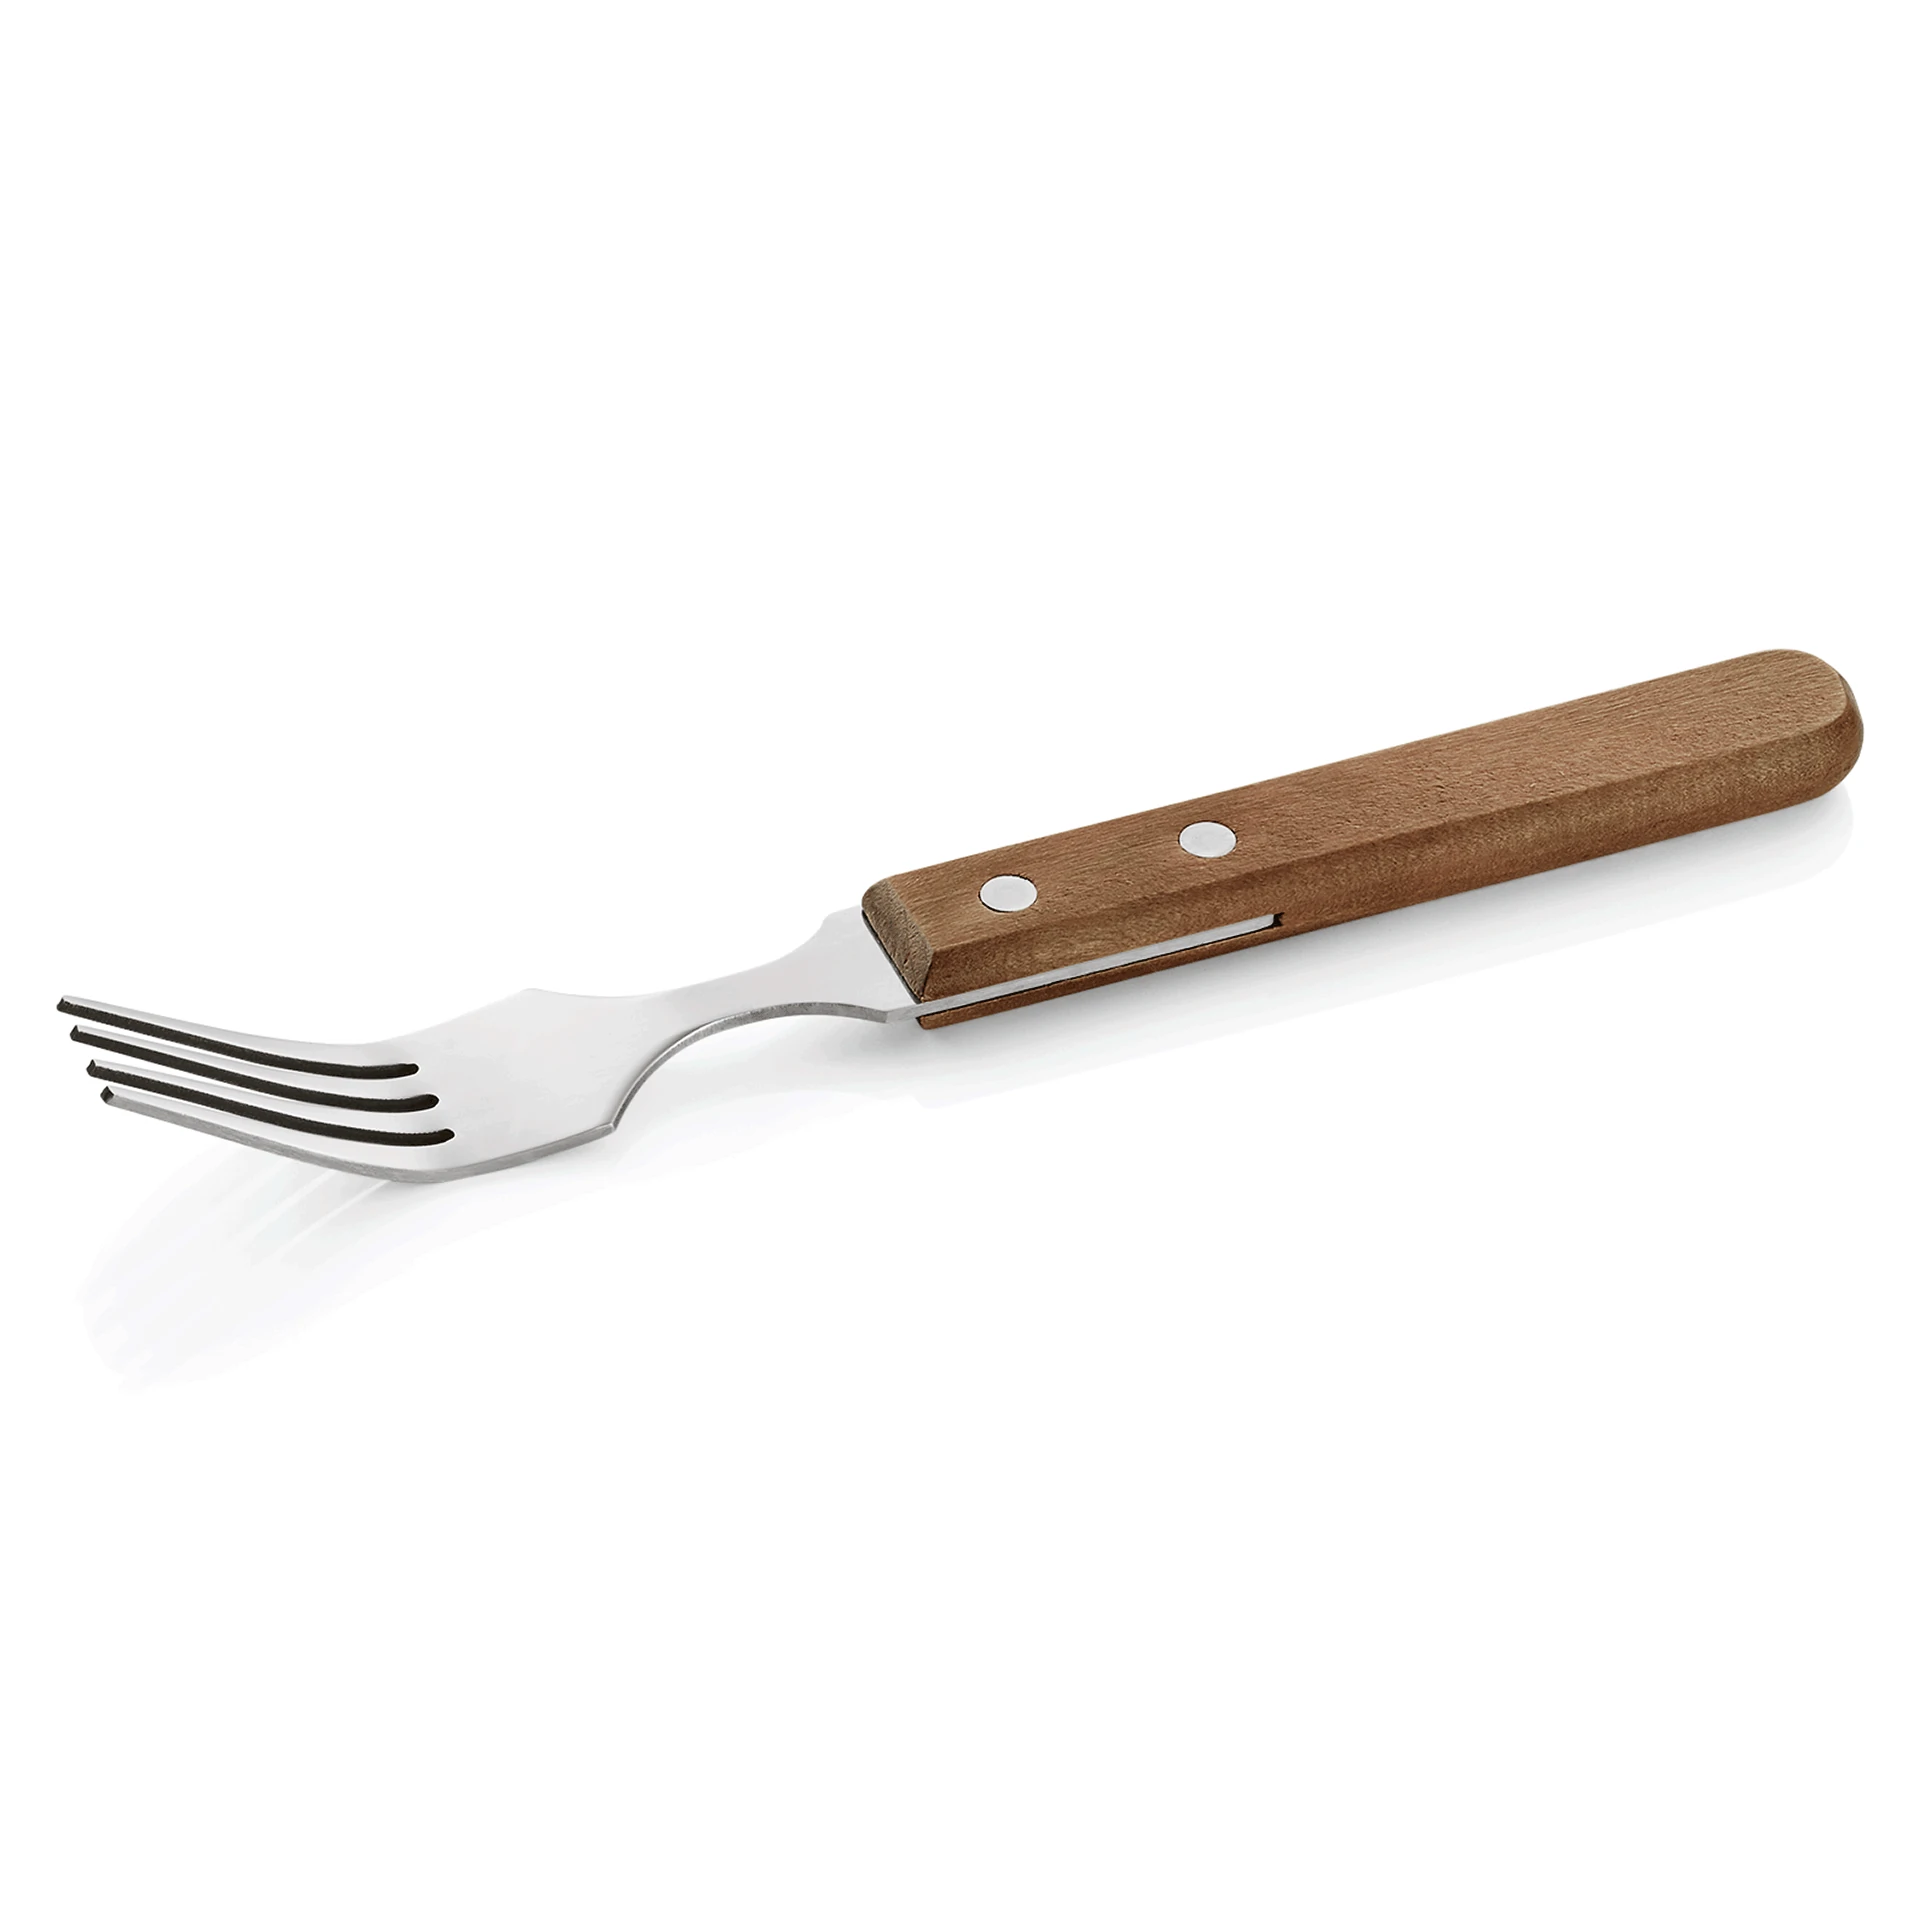 Steak/pizza cutlery fork